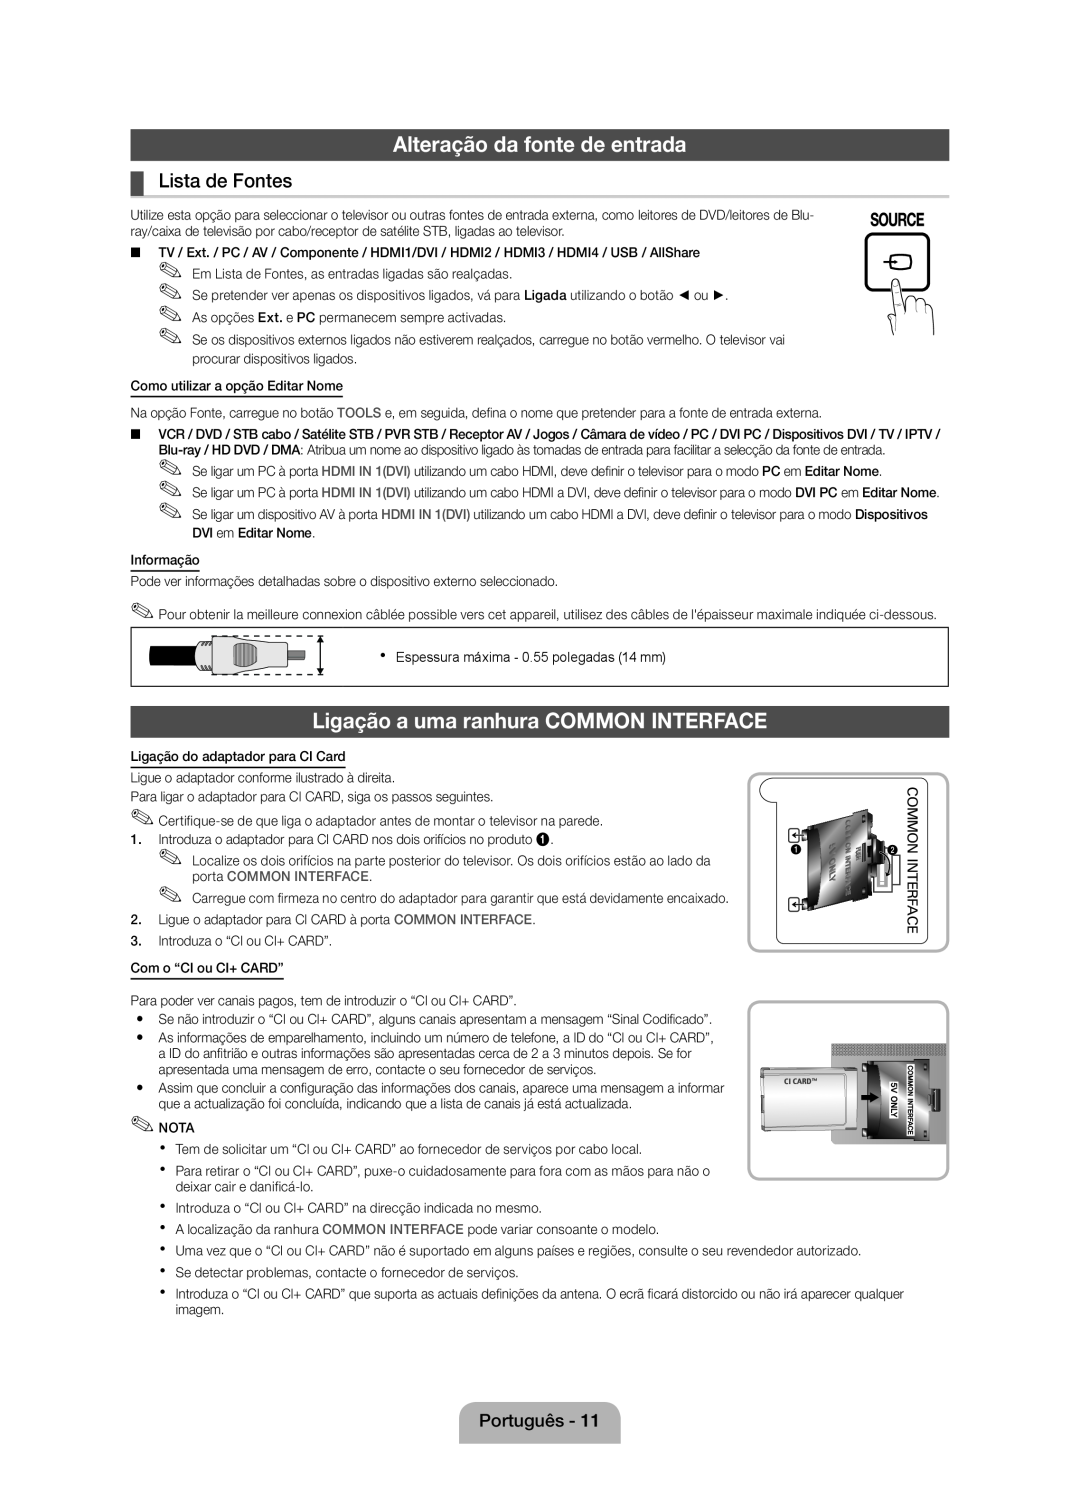 Samsung UE40D5000PWXXC manual Alteração da fonte de entrada, Ligação a uma ranhura COMMON INTERFACE, Lista de Fontes 